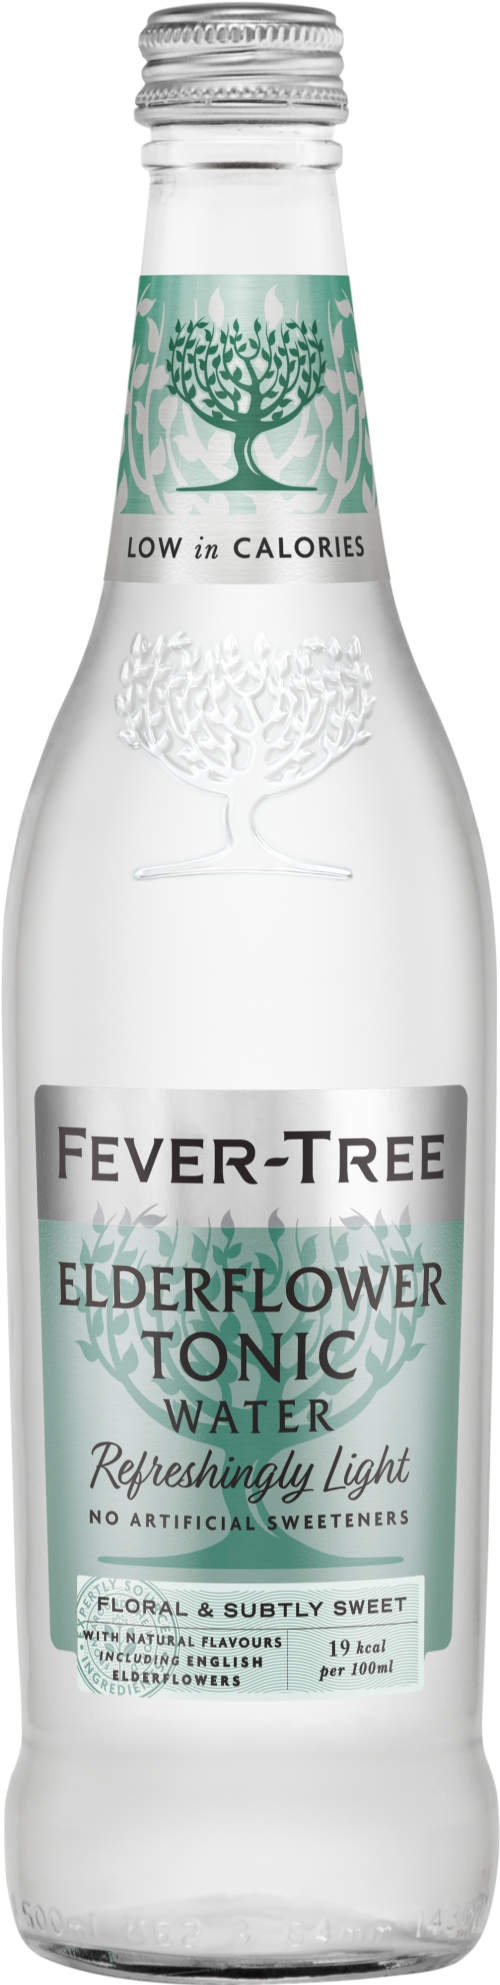 FEVER-TREE Refreshingly Light Elderflower Tonic Water 500ml